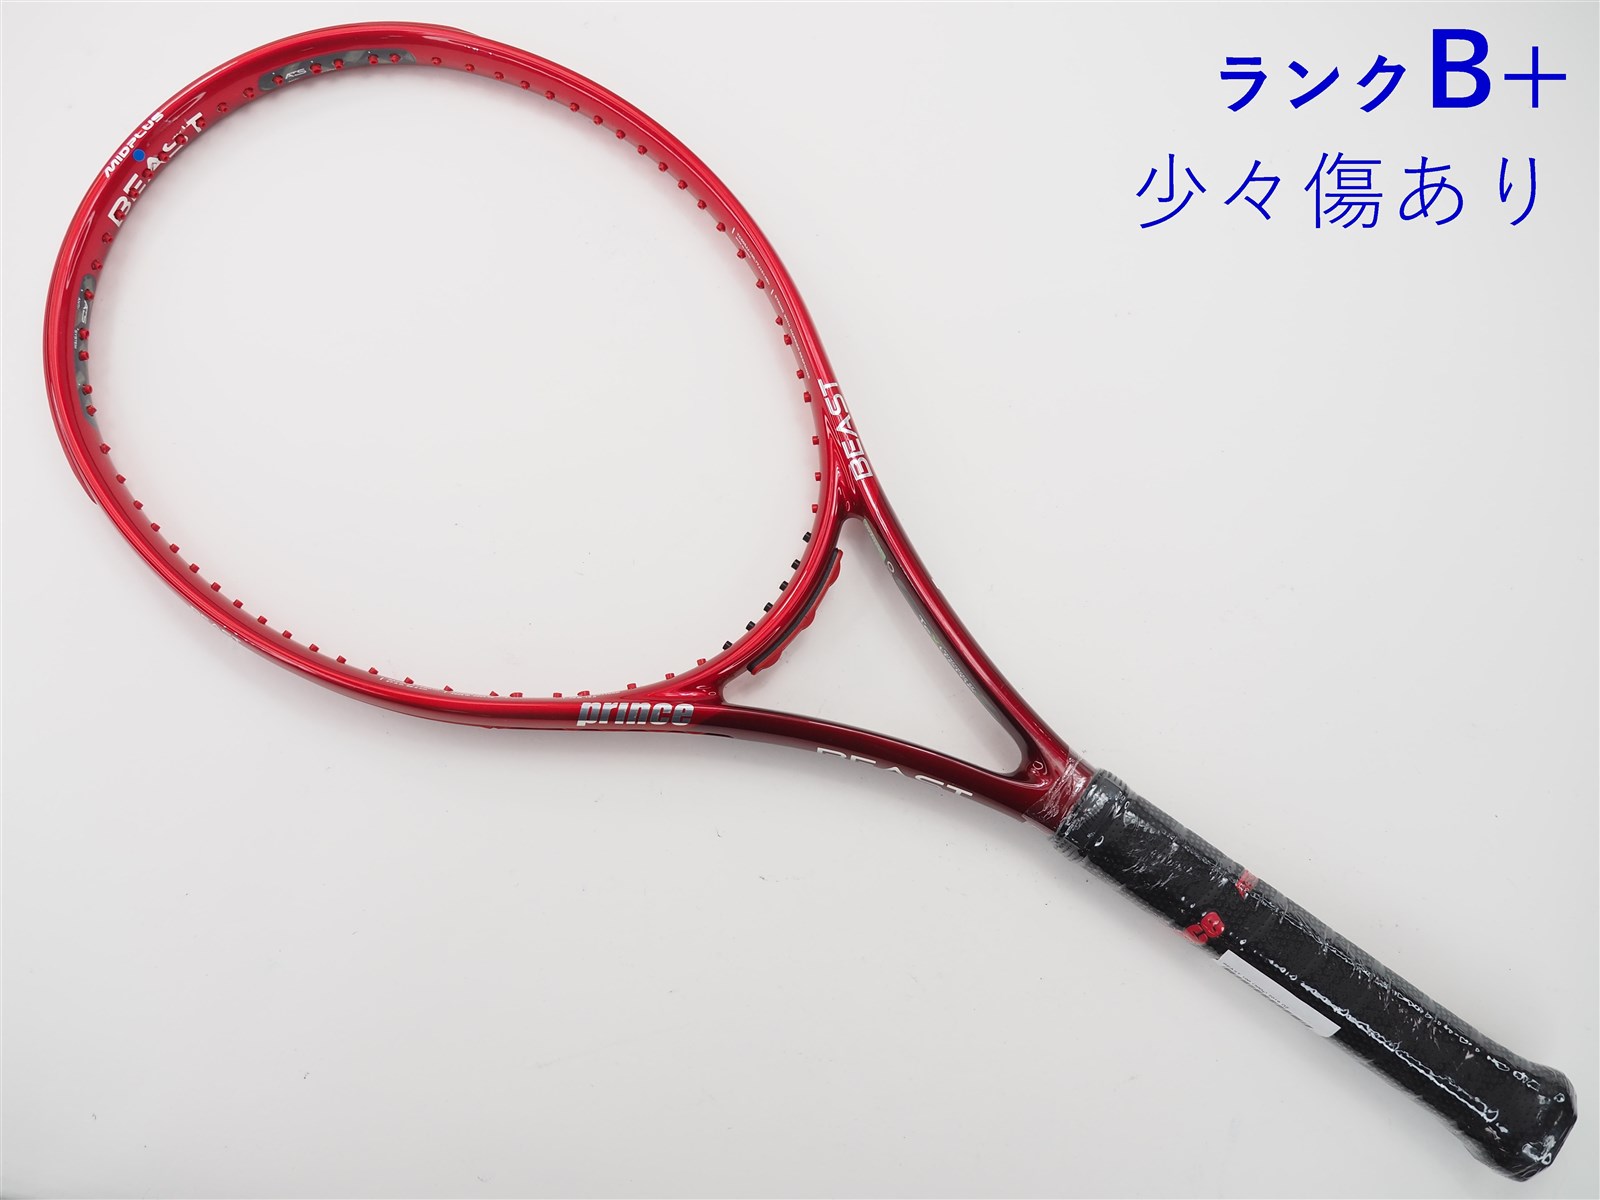 スノワート ビタス100 G3 グリップ3 テニスラケット - ラケット(硬式用)